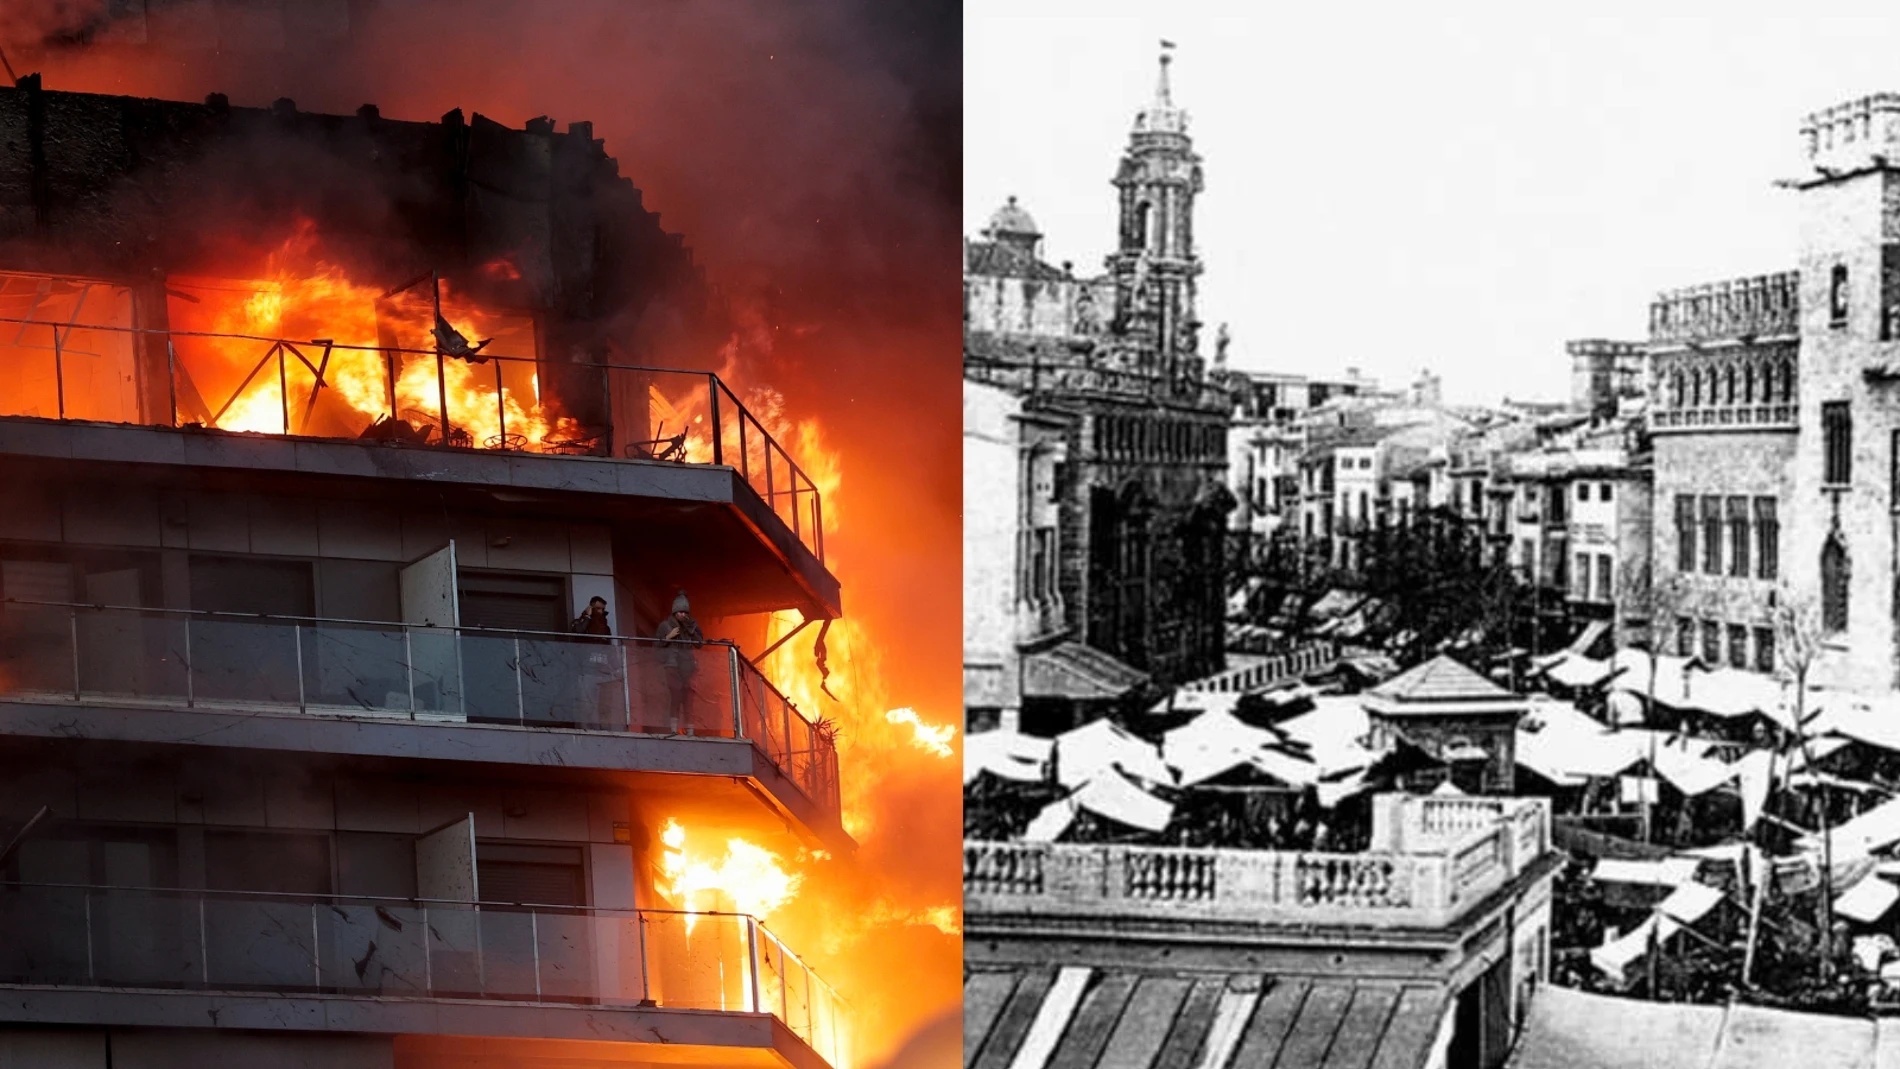 El incendio que cambió Valencia en el siglo XV